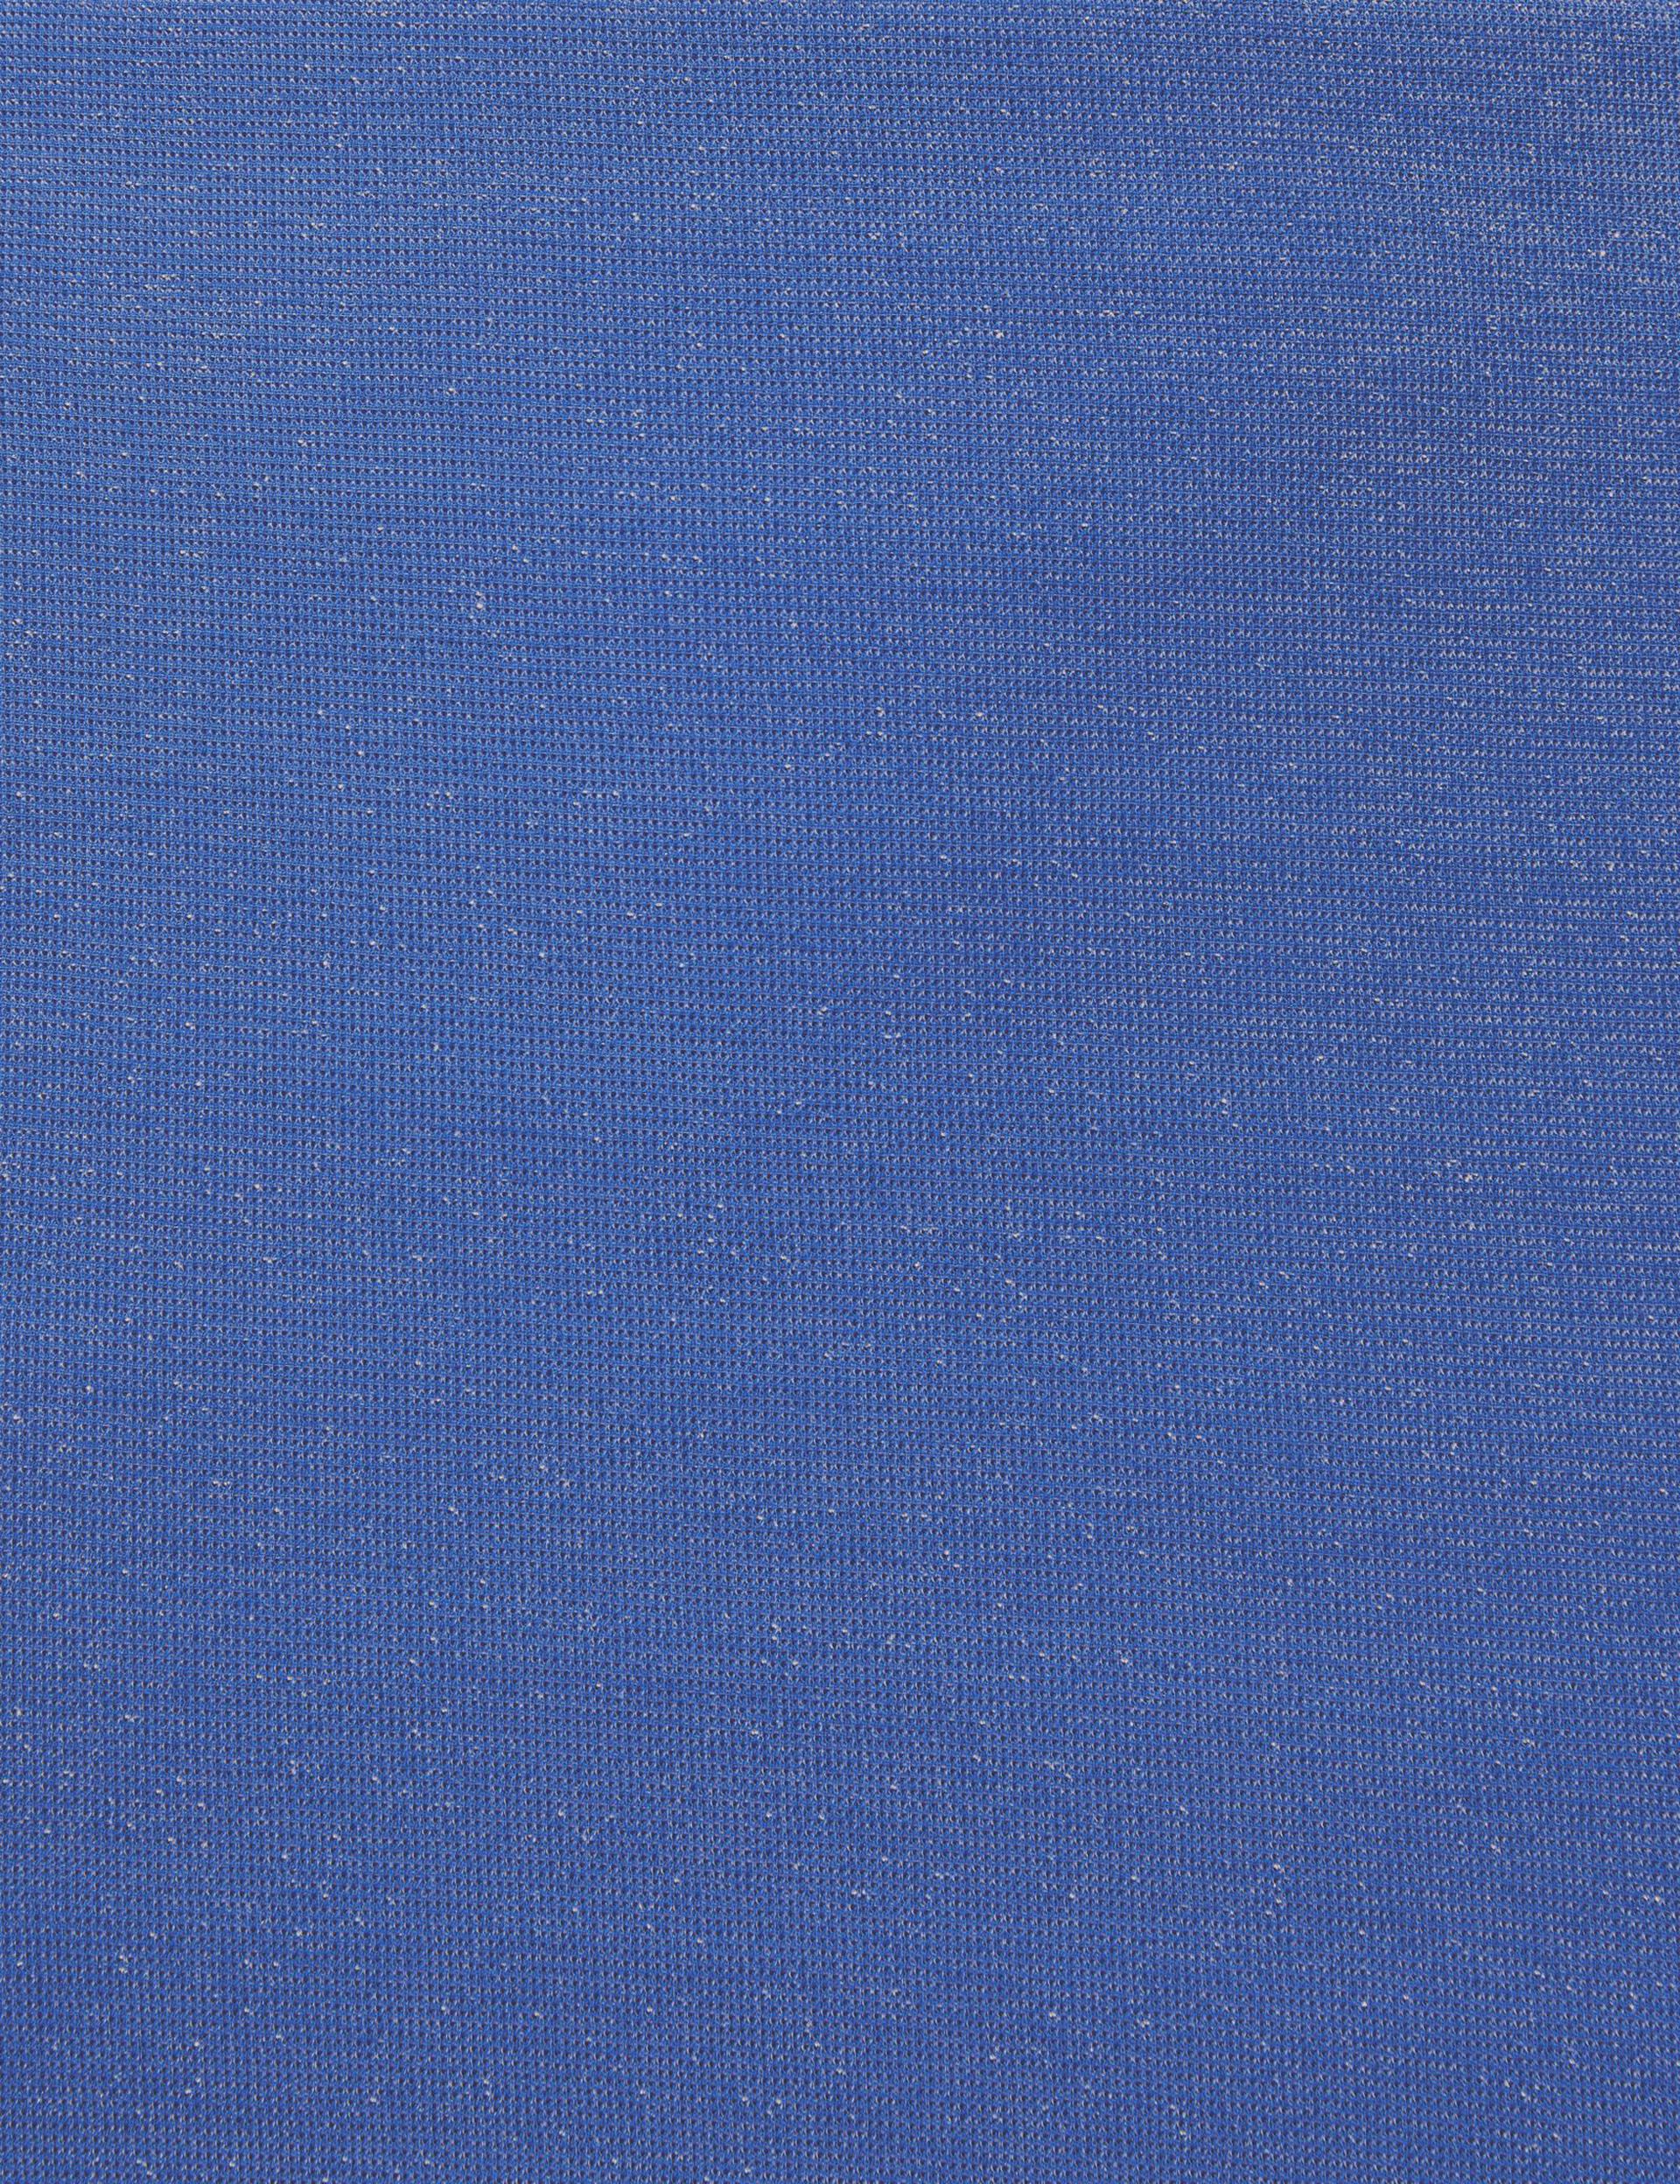 Jupe longue métallique bleue indigo